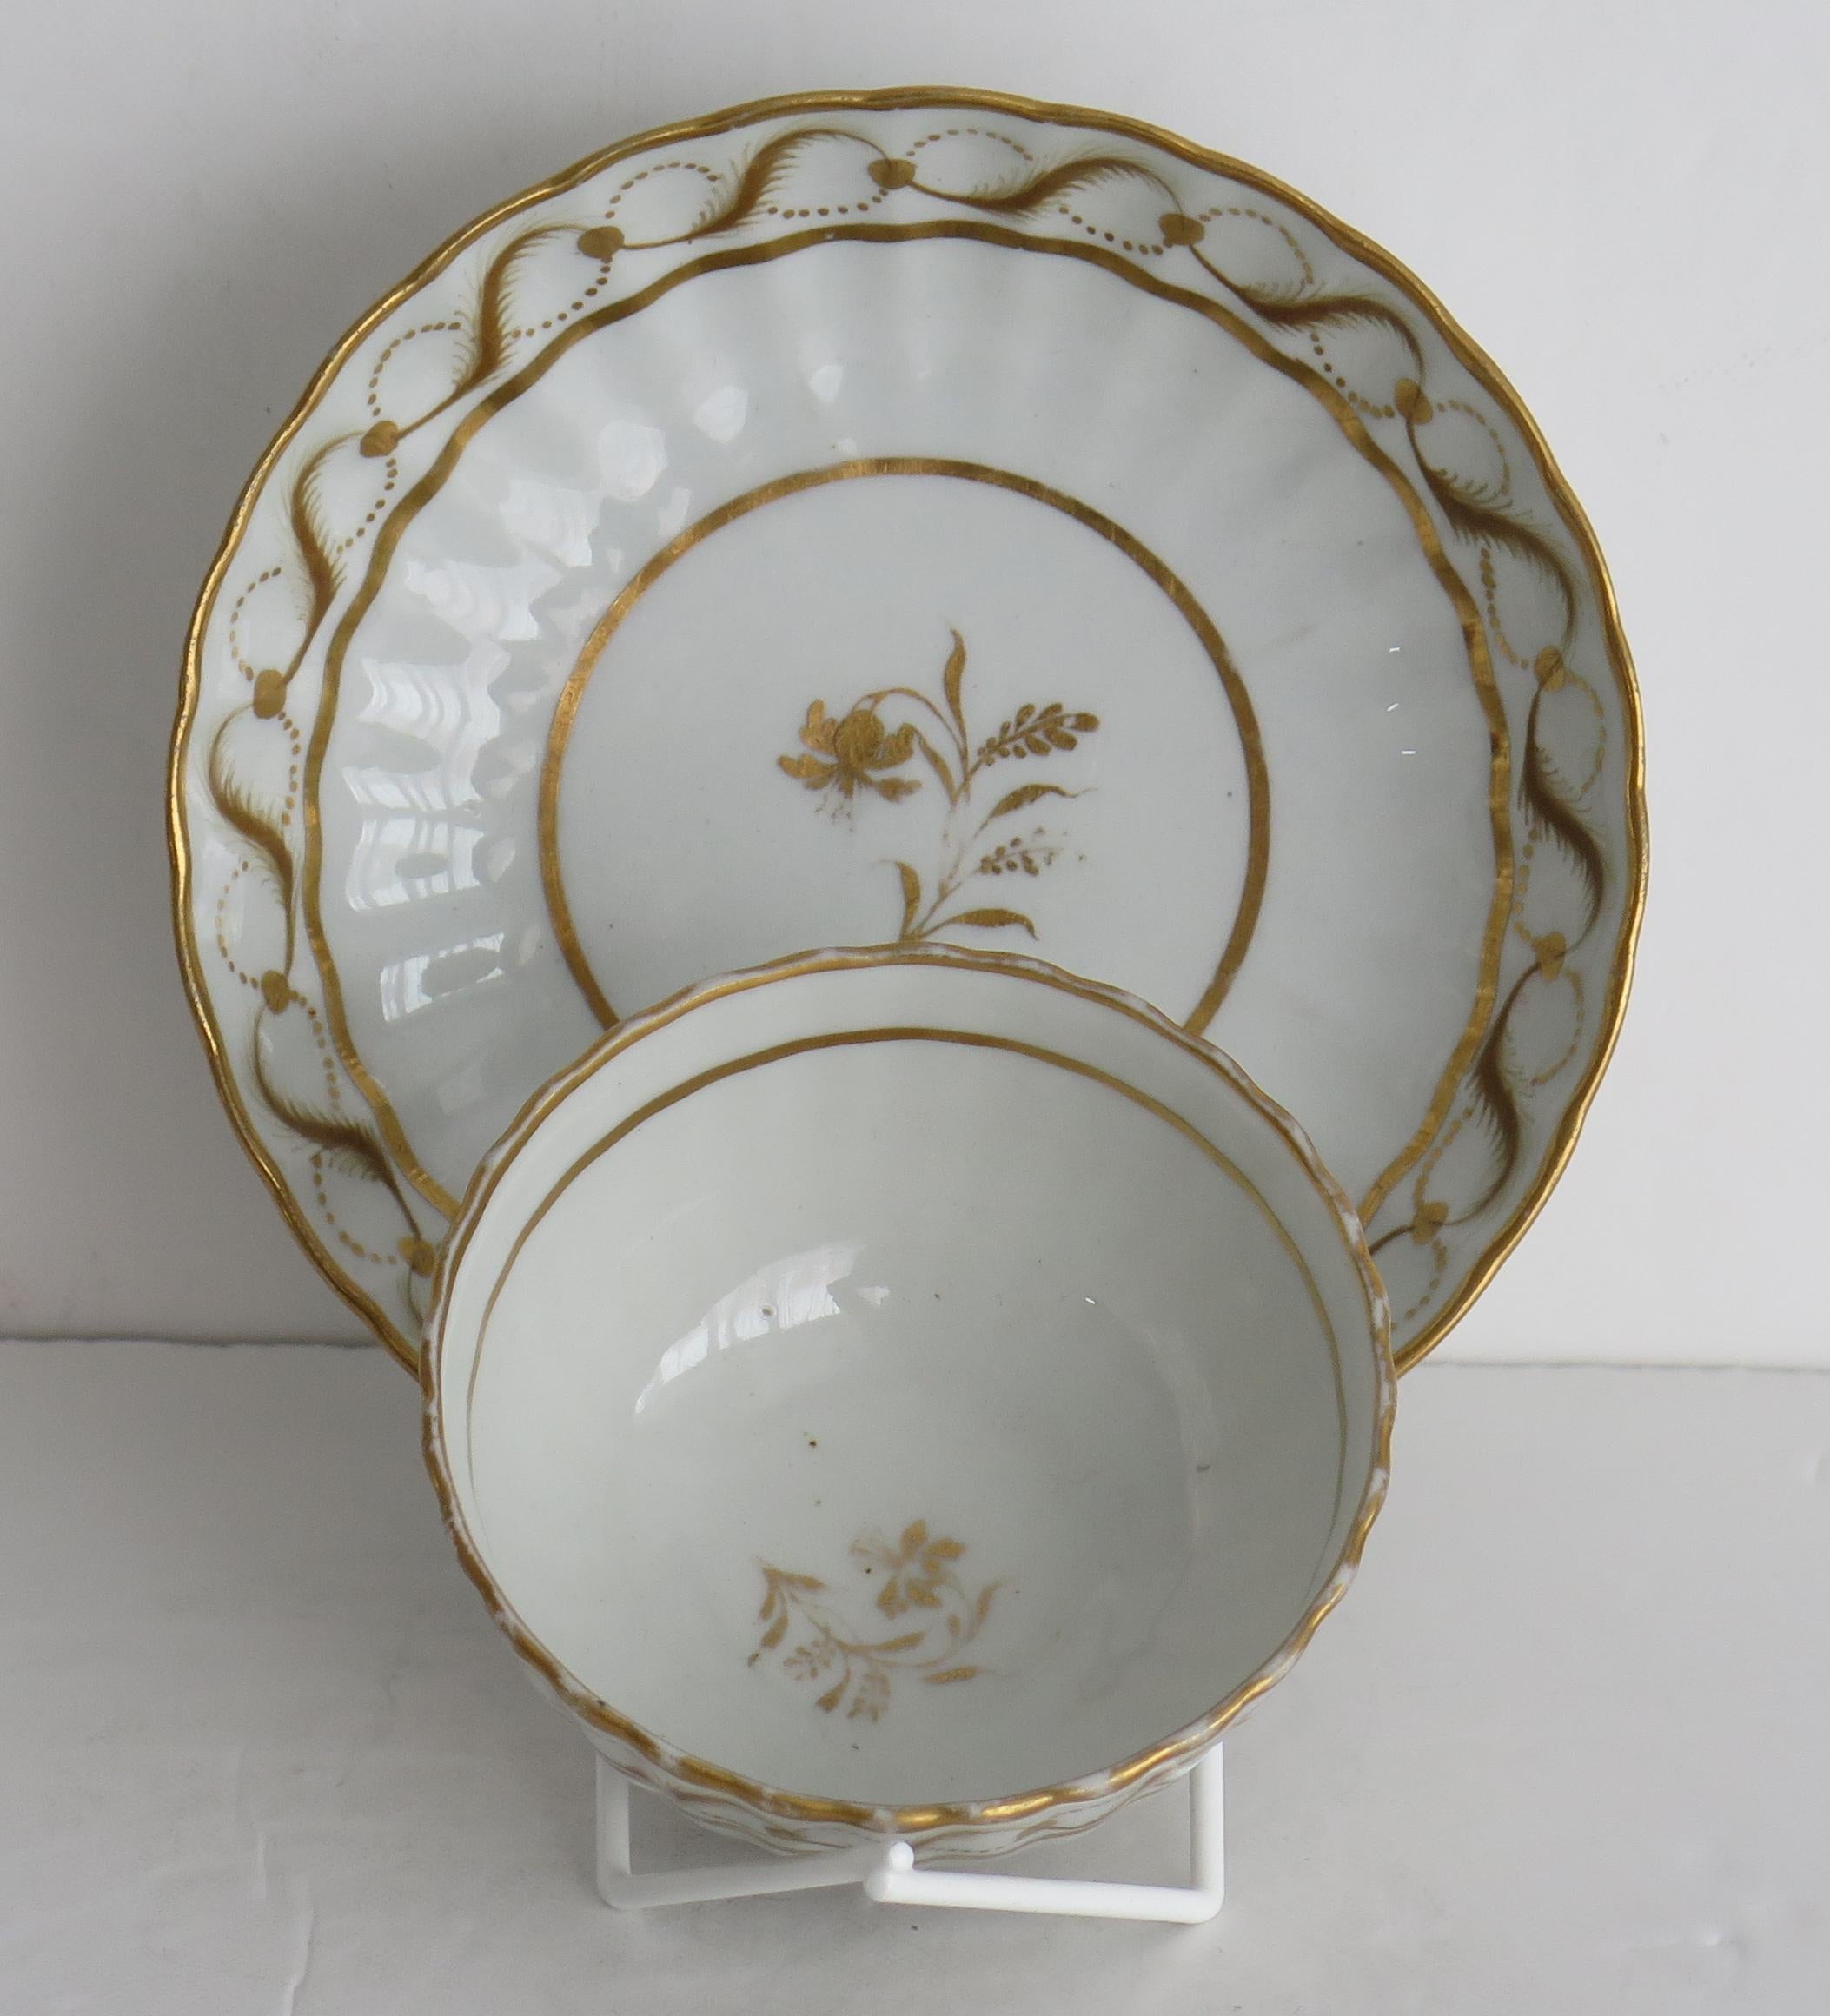 Il s'agit d'un très beau bol à thé et d'une soucoupe en porcelaine à pâte dure de New Hall, datant du 18e siècle, période George 111, vers 1785.

Les deux pièces ont 24 cannelures verticales.

Les deux pièces sont décorées en sur-glaçure d'un motif